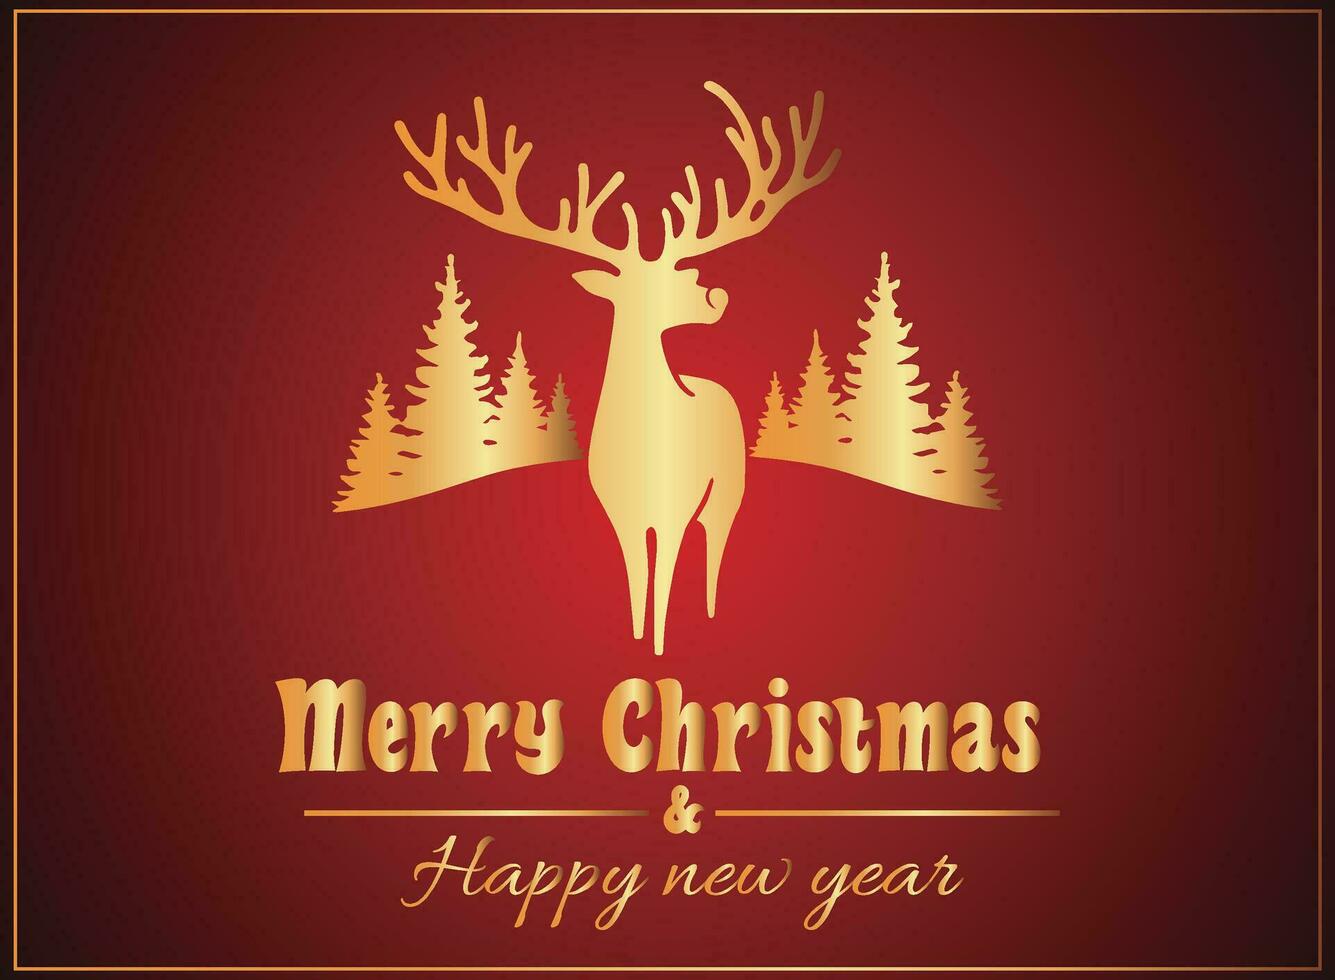 real carmesí celebracion, alegre Navidad y contento nuevo año elegancia, Navidad tarjeta vector